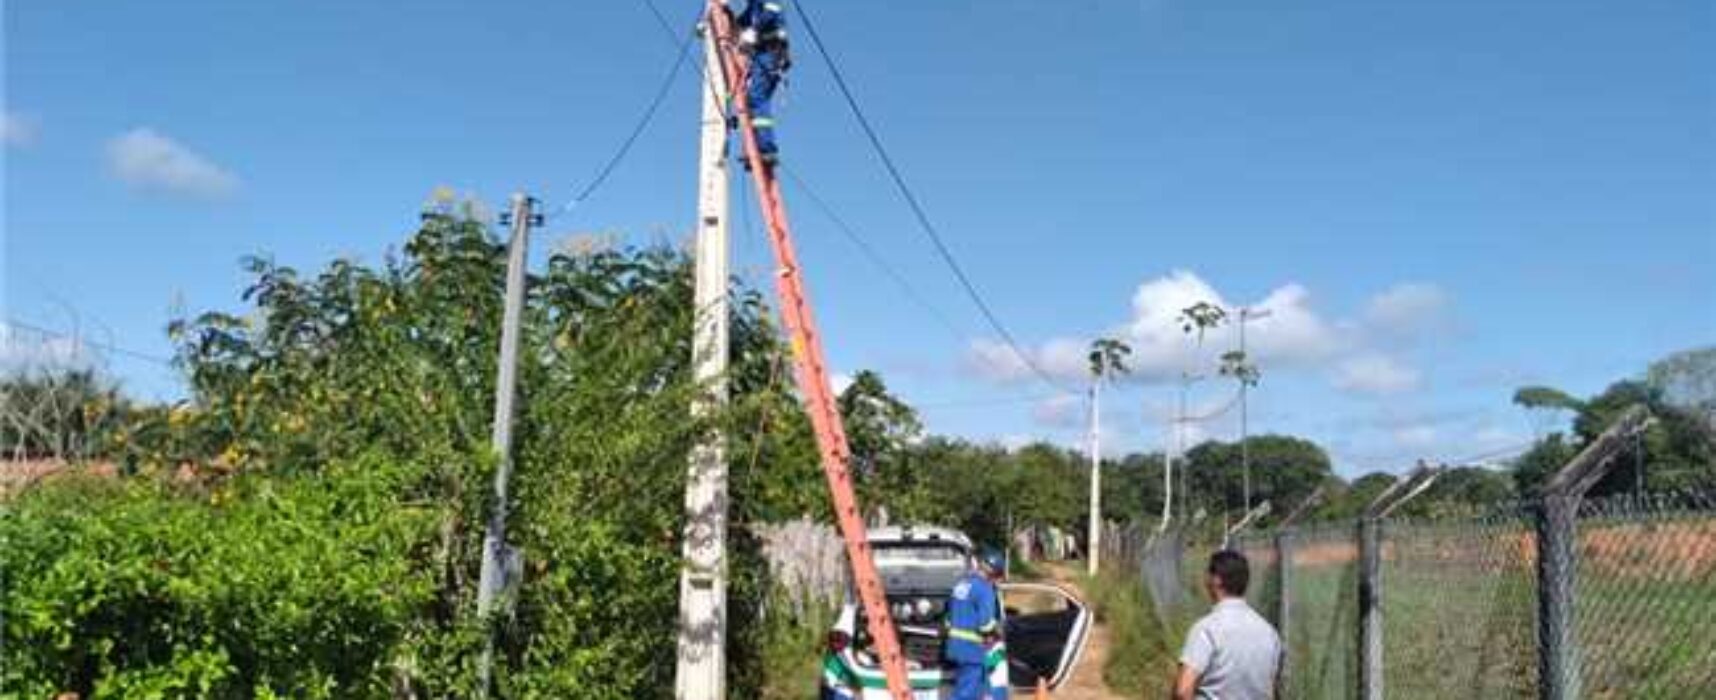 Prefeitura de Ilhéus implanta 21 novos postes de iluminação nas zonas urbana e rural da cidade